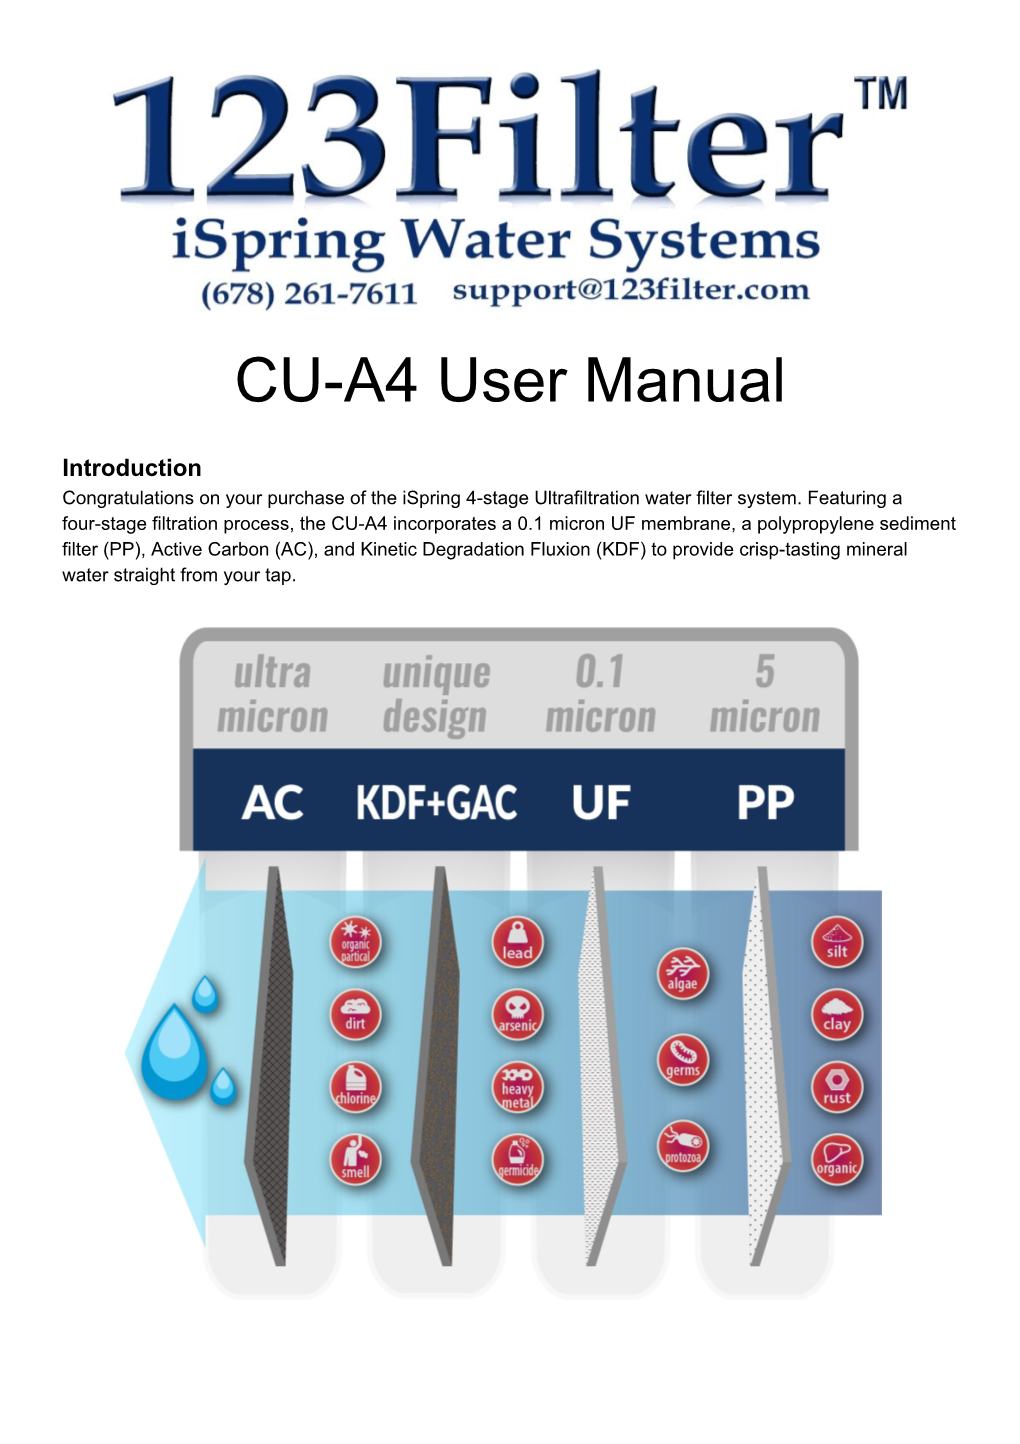 CU-A4 User Manual